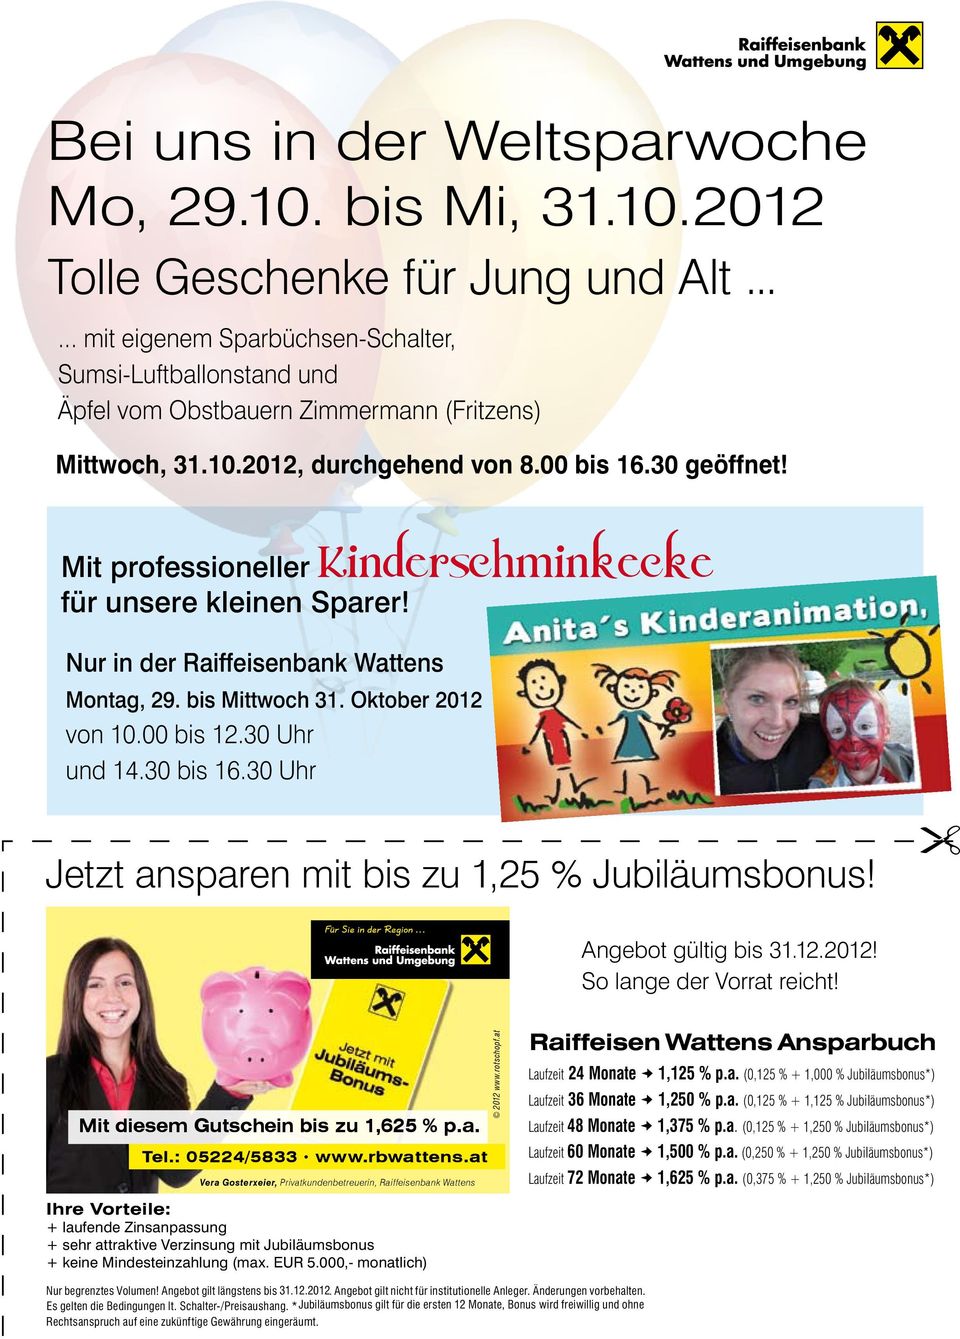 Mit professioneller Kinderschminkecke für unsere kleinen Sparer! Nur in der Raiffeisenbank Wattens Montag, 29. bis Mittwoch 31. Oktober 2012 von 10.00 bis 12.30 Uhr und 14.30 bis 16.